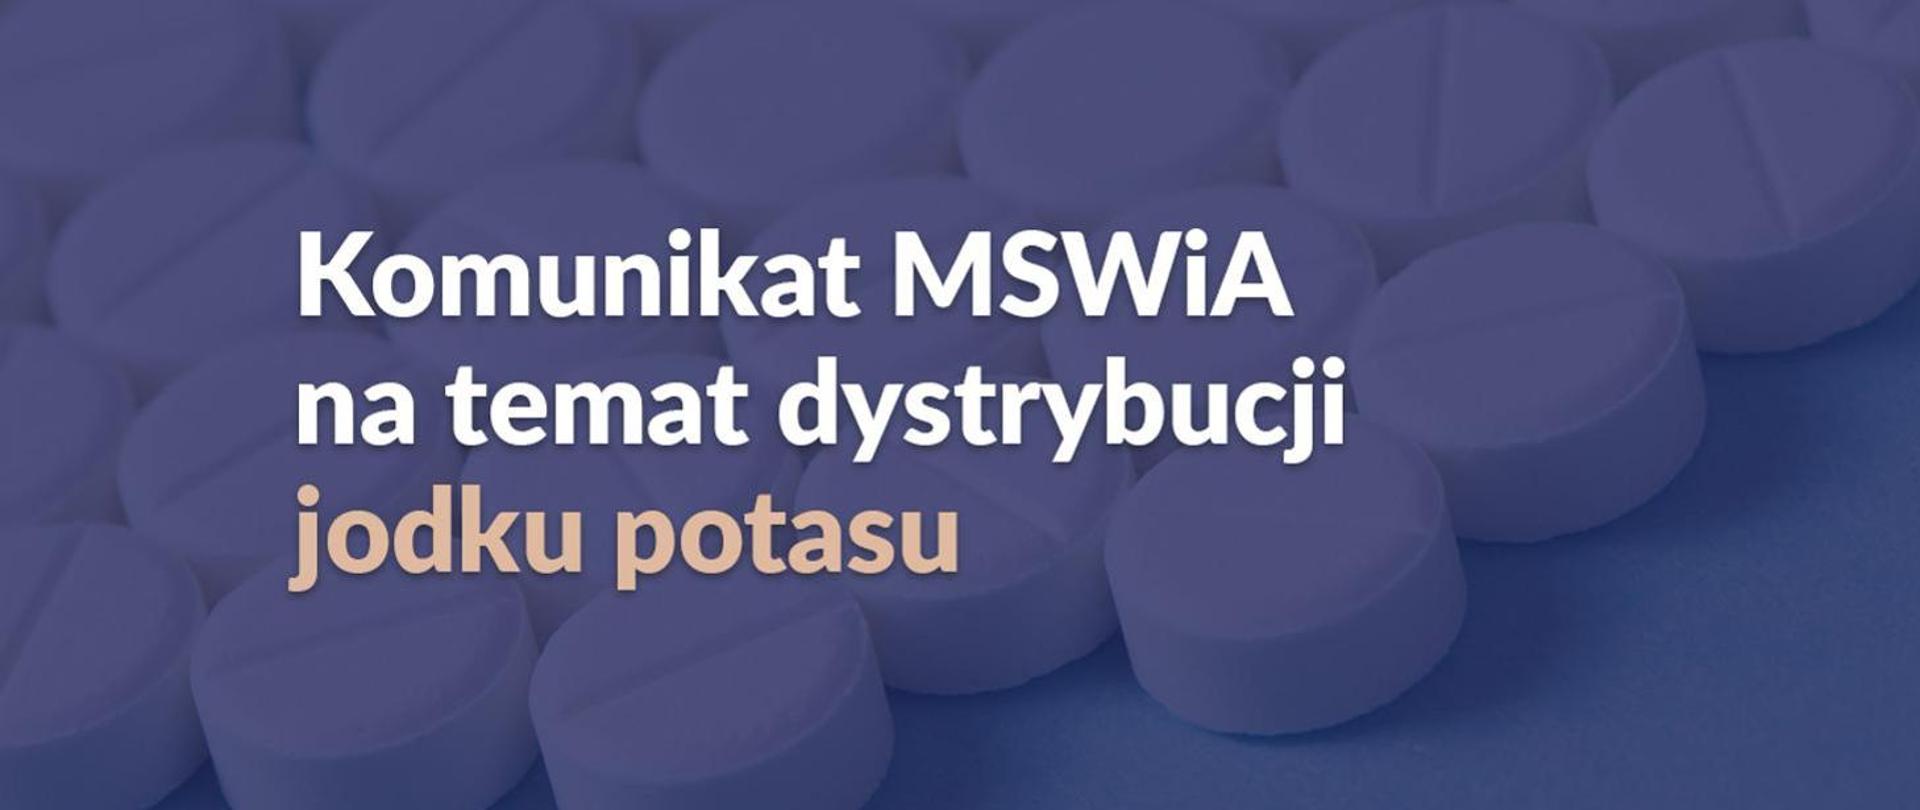 Widać napis Komunikat MSWiA na temat dystrybucji jodku potasu, w tle widać tabletki